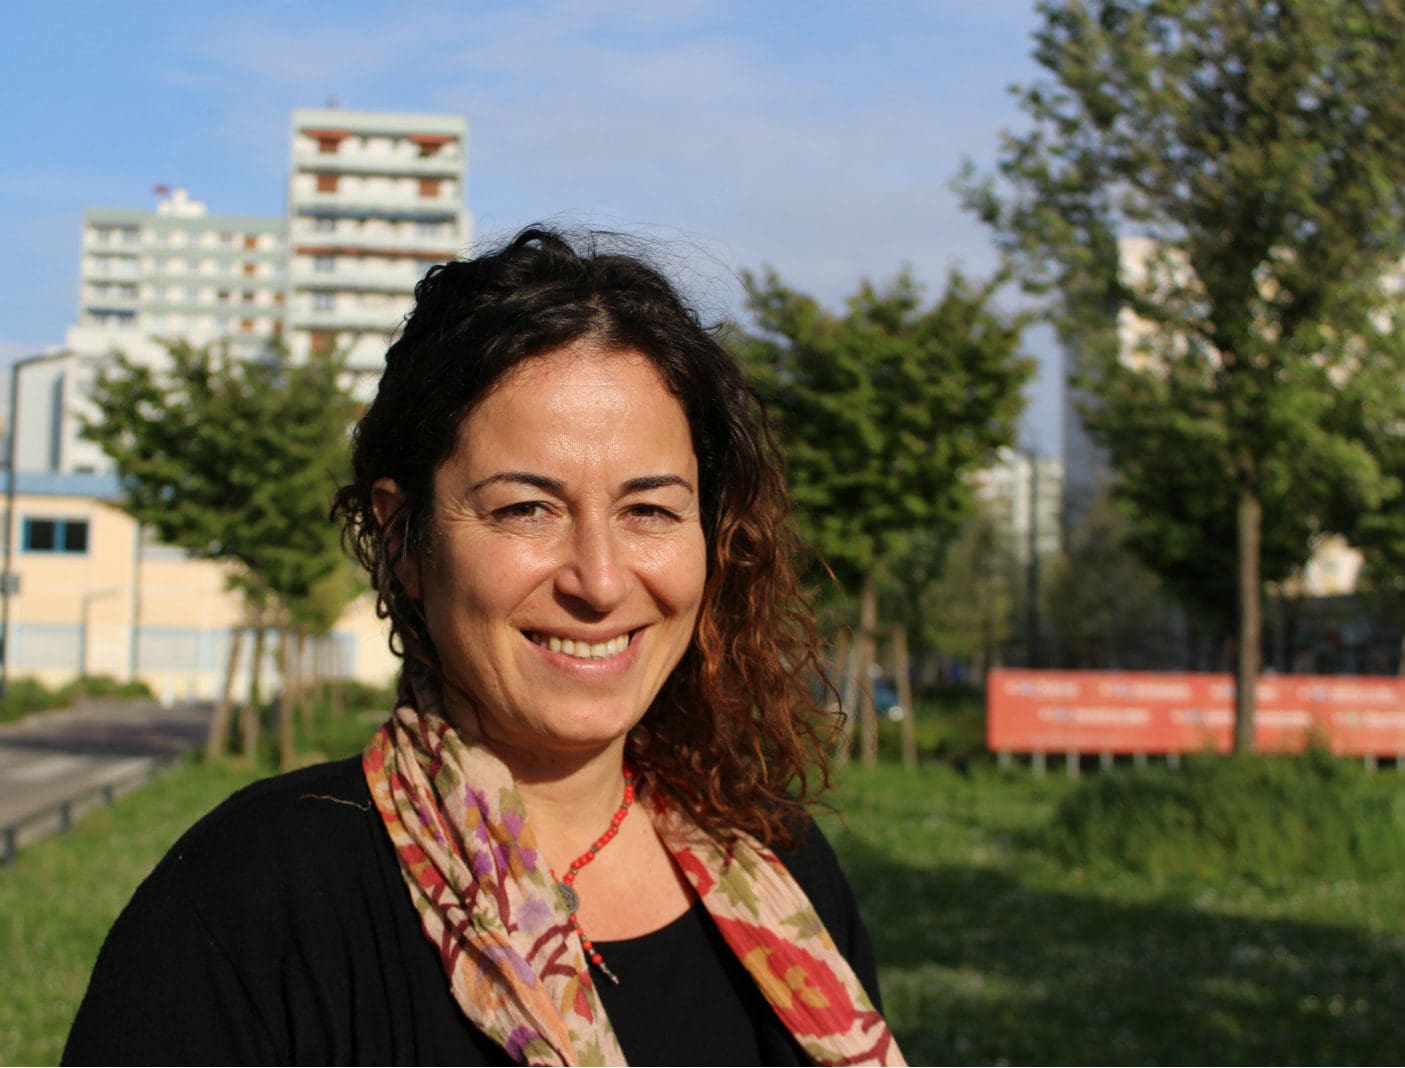 Le procès de la sociologue Pinar Selek, symbole de la chasse judiciaire aux opposants en Turquie